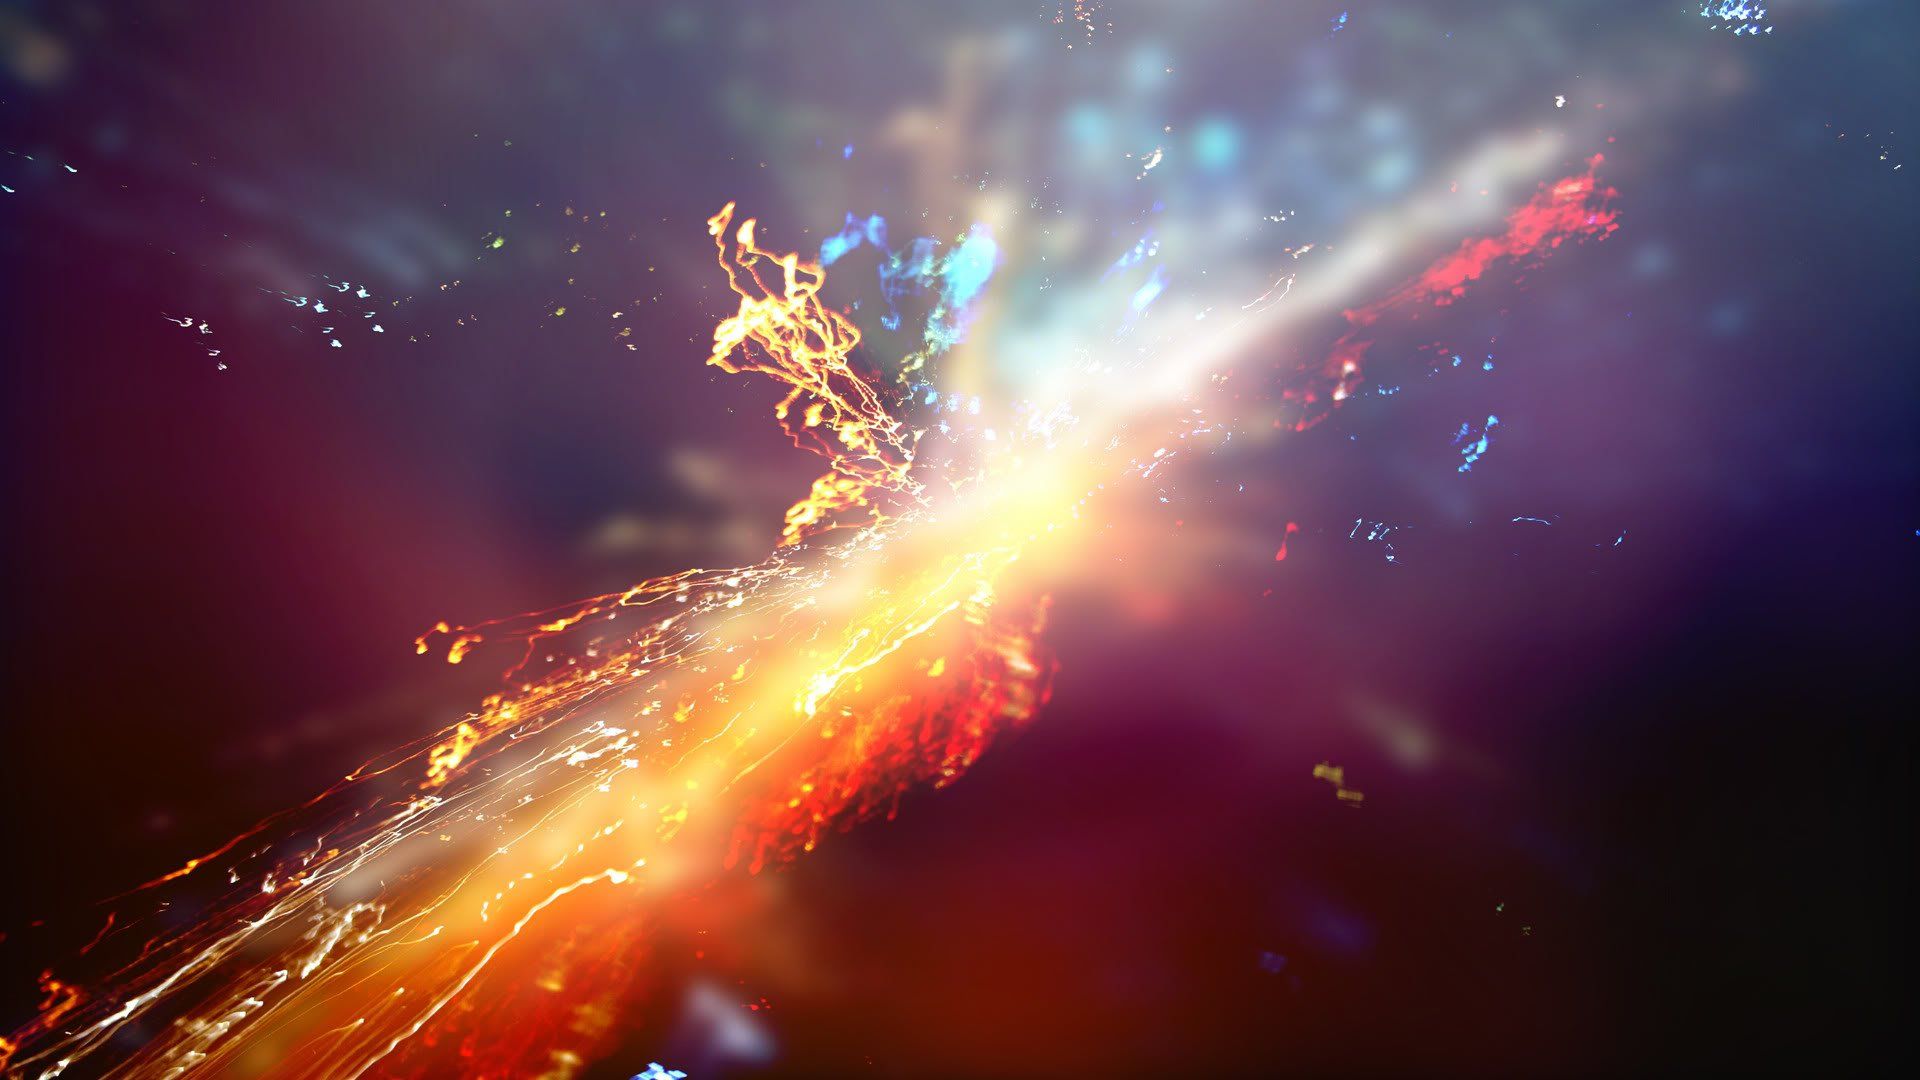 Supernova HD Wallpaper